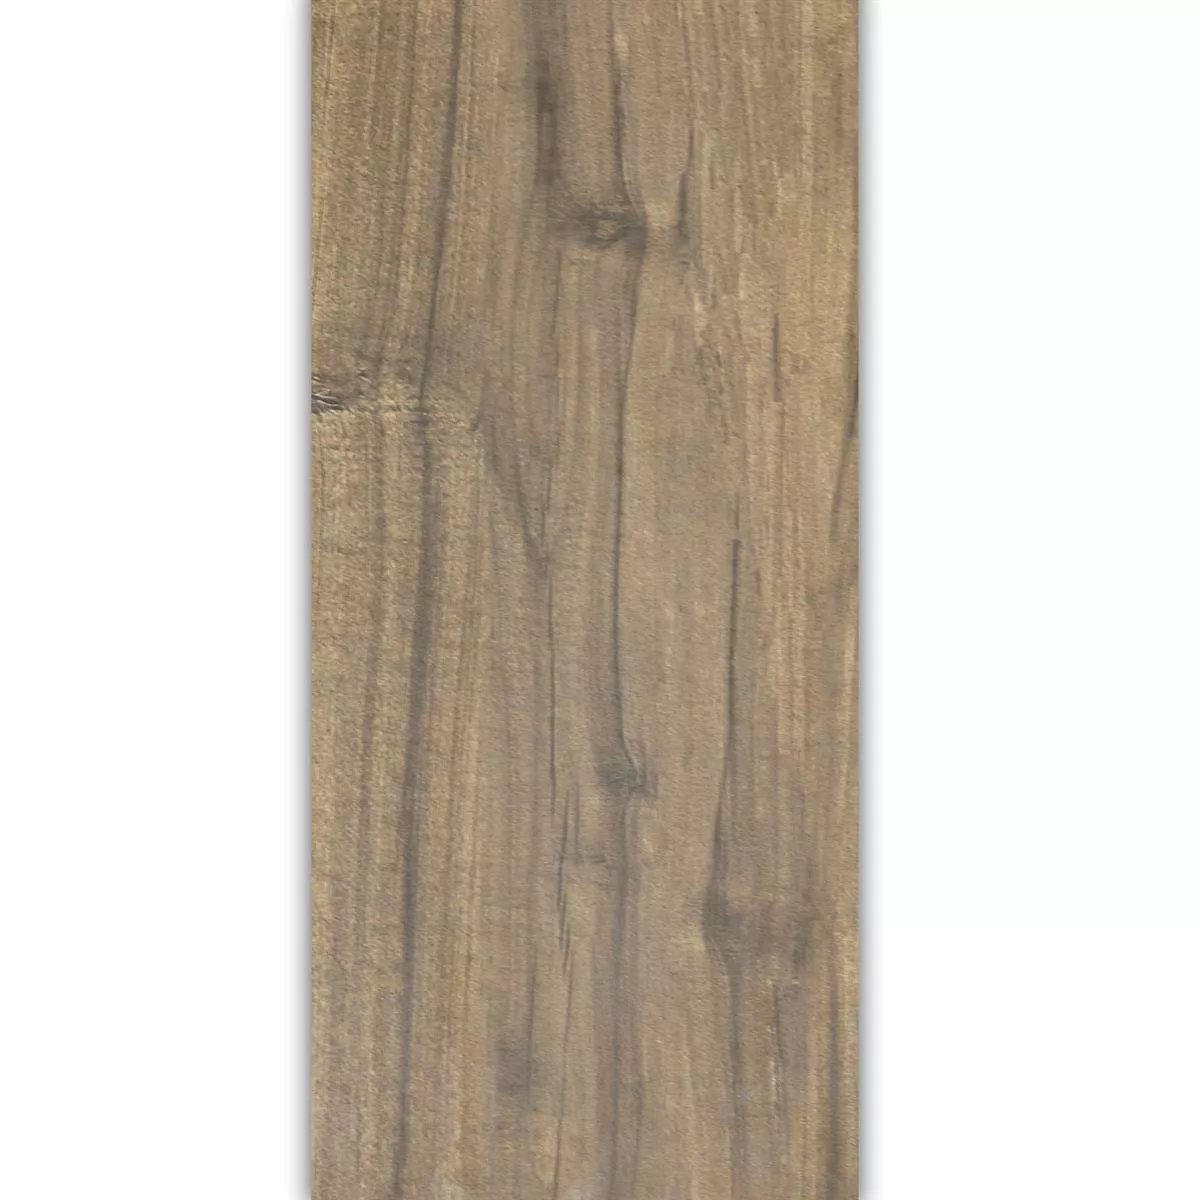 Vzorek Podlahové Dlaždice Dřevěný Vzhled Emparrado Hnědá 30x120cm